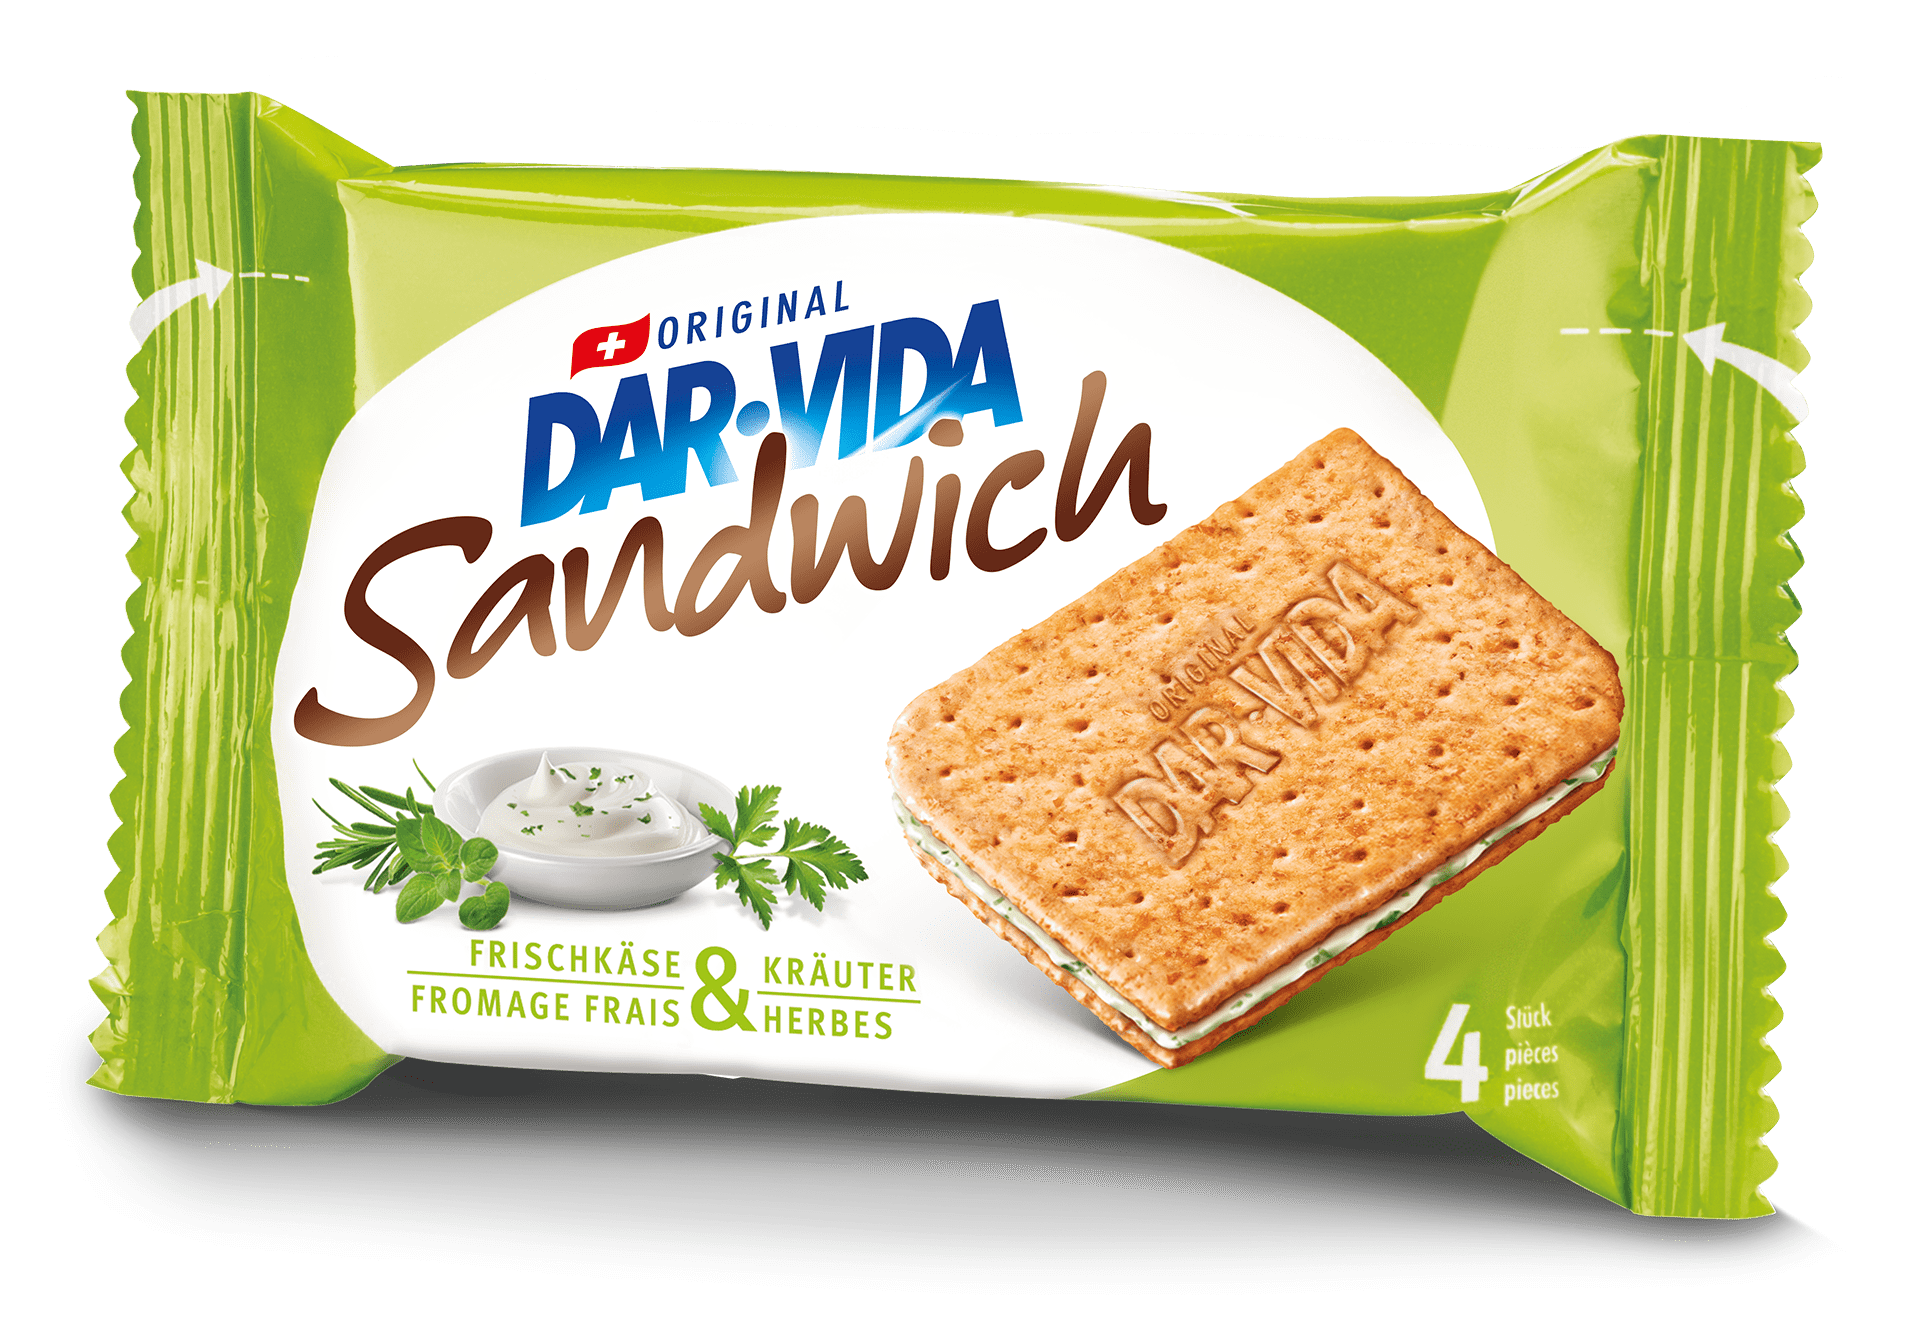 DAR-VIDA Sandwich Fromage frais & herbes